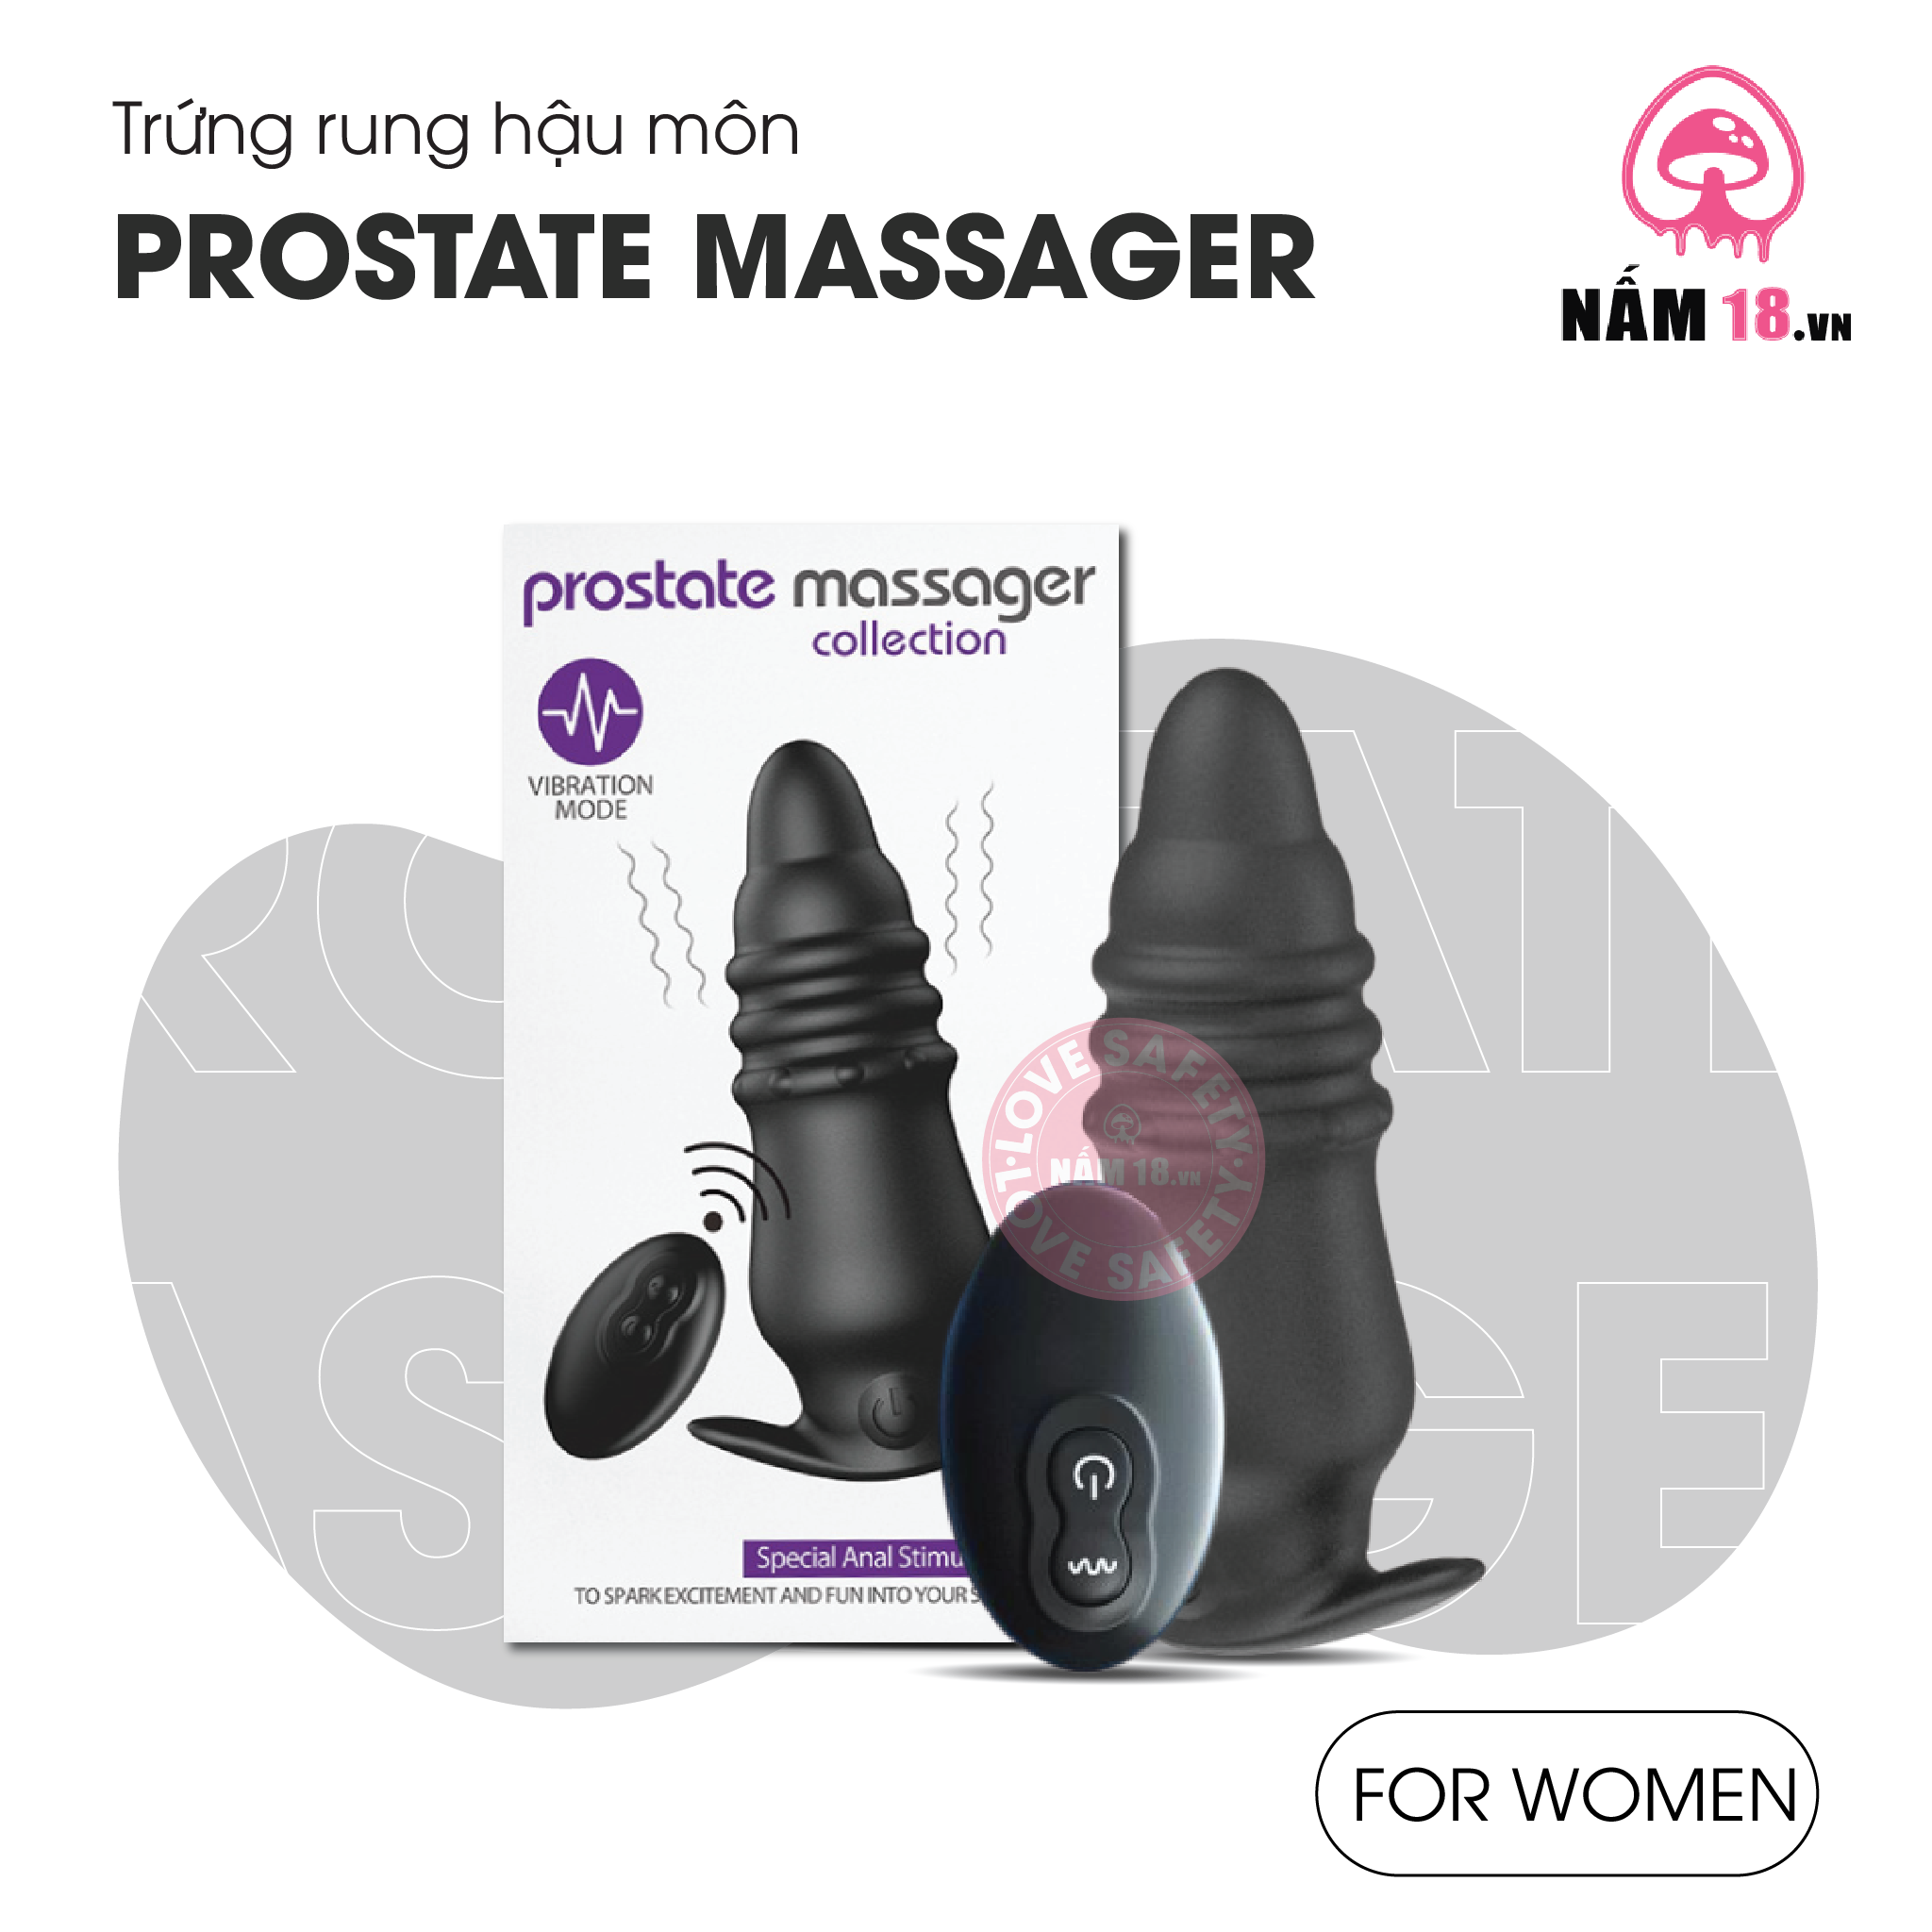  Trứng Rung Hậu Môn Prostate Massager 12 Chế Độ Rung - Sạc Điện 